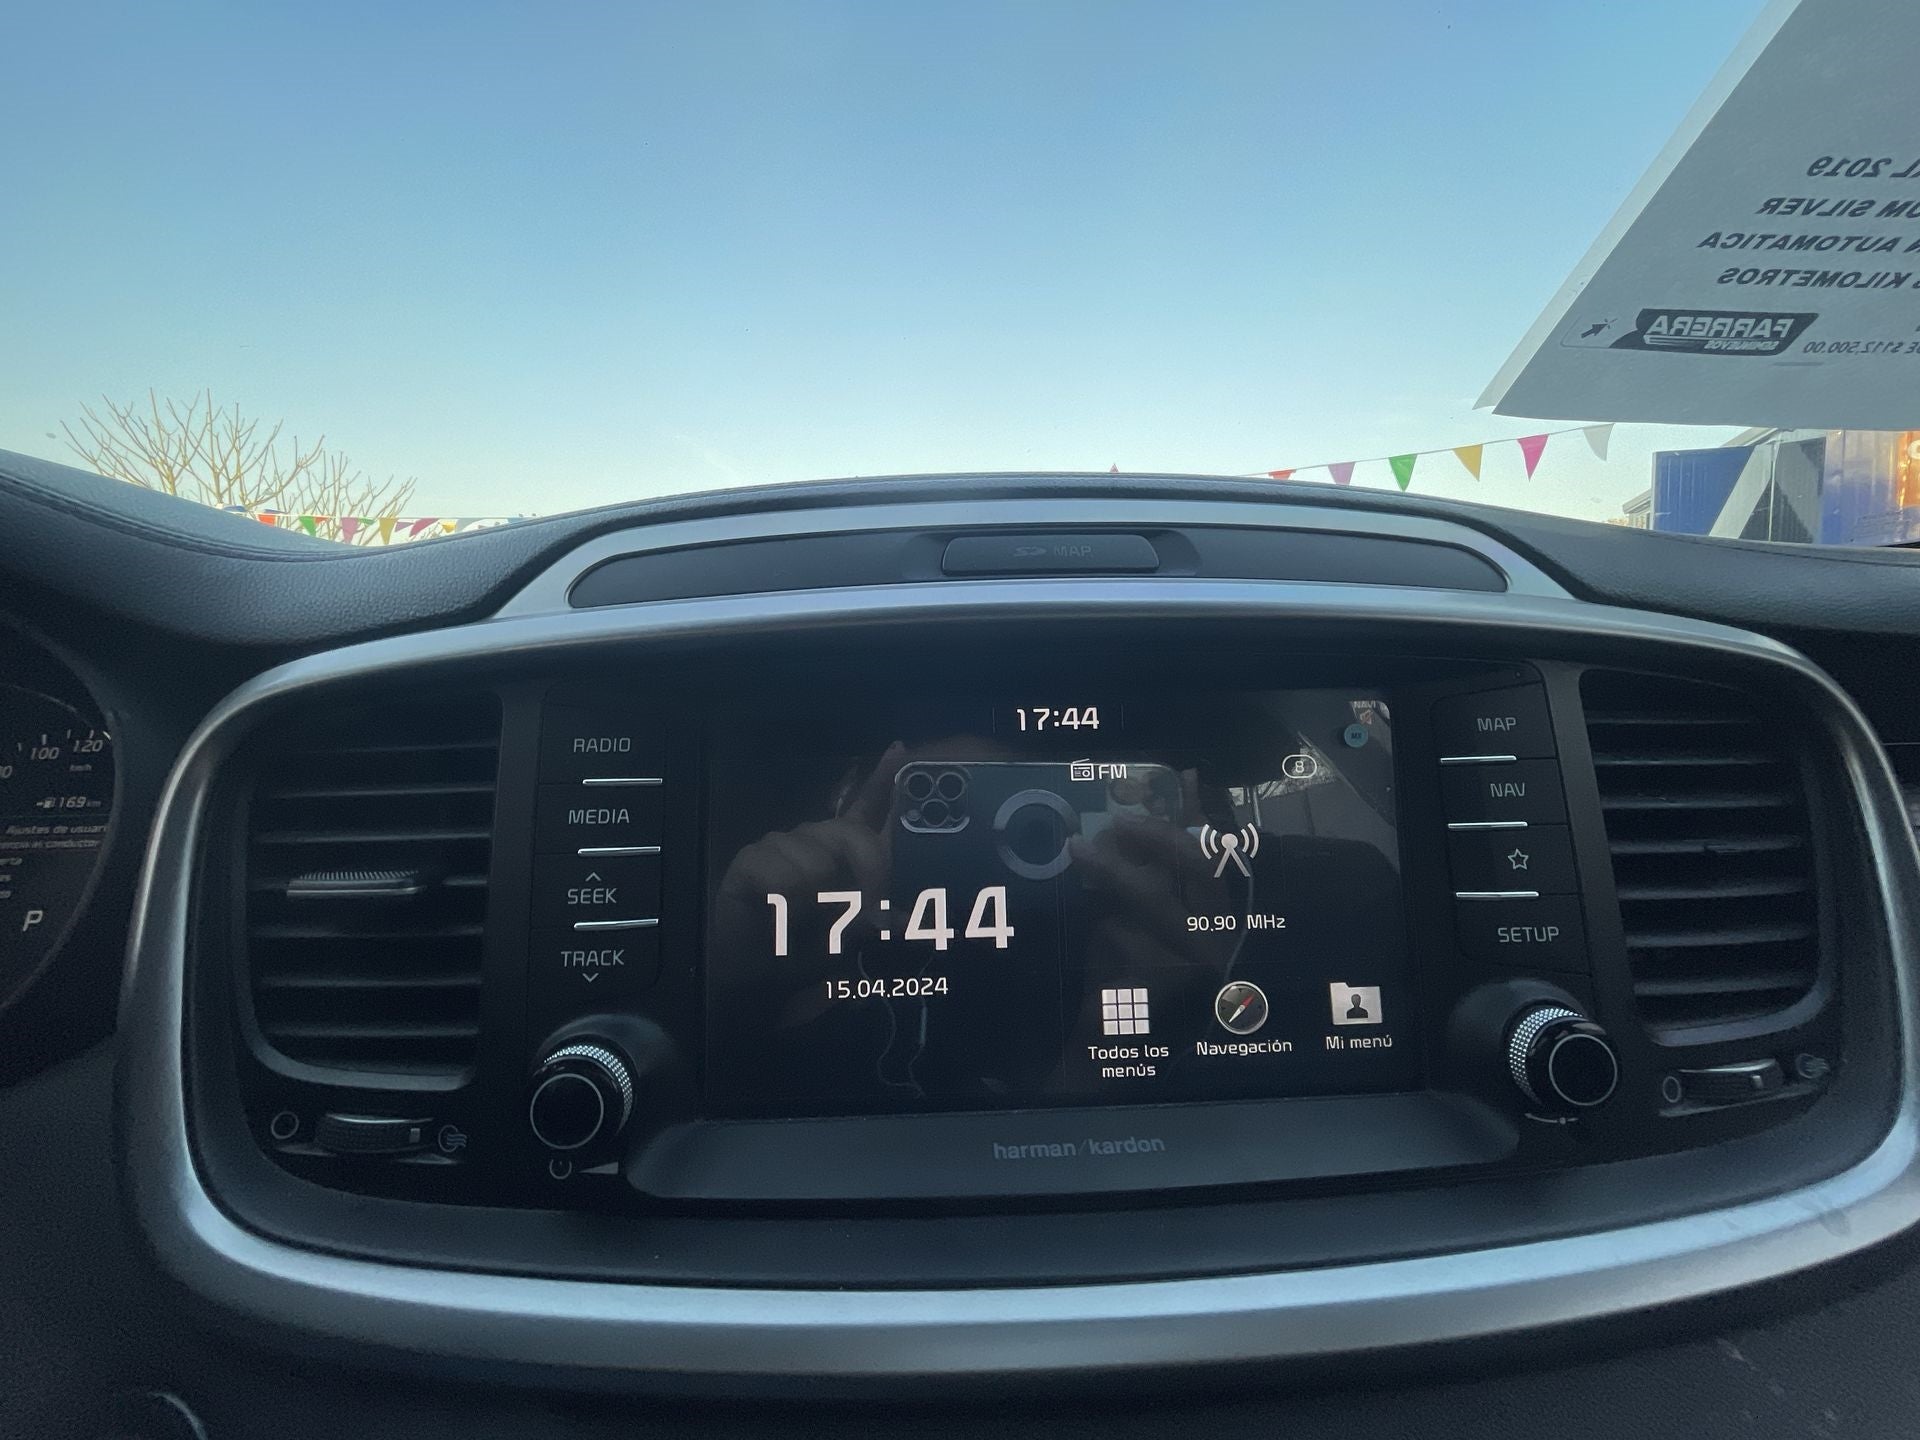 2019 Kia Sorento 3.3 V6 SXL Piel 7 Pasajeros AWD At